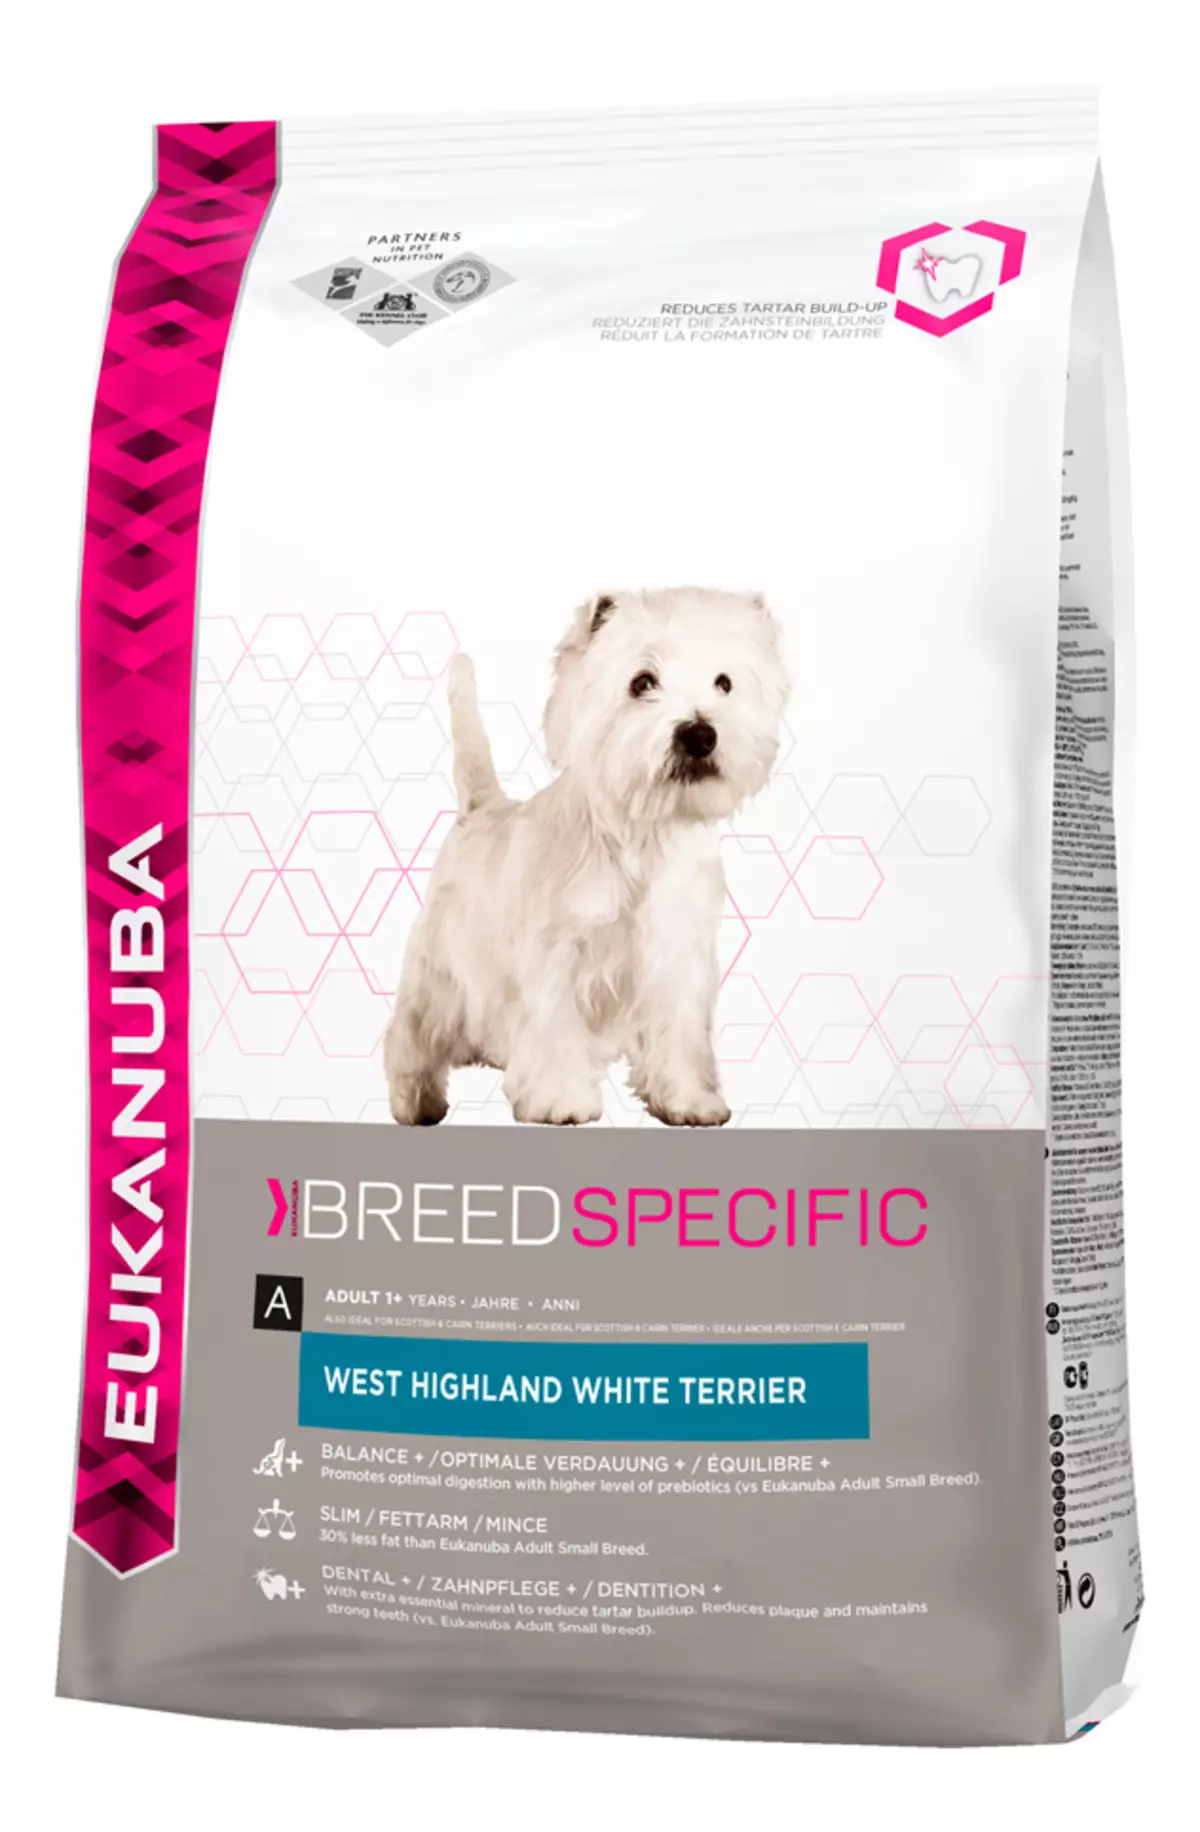 West Highland White Terrier (66 billeder): Beskrivelse af hvide hunde, plusser og minusser af racen. Hvordan vælger du hvalpe? Ernæring og karakter. Ejerskabsanmeldelser 23058_59